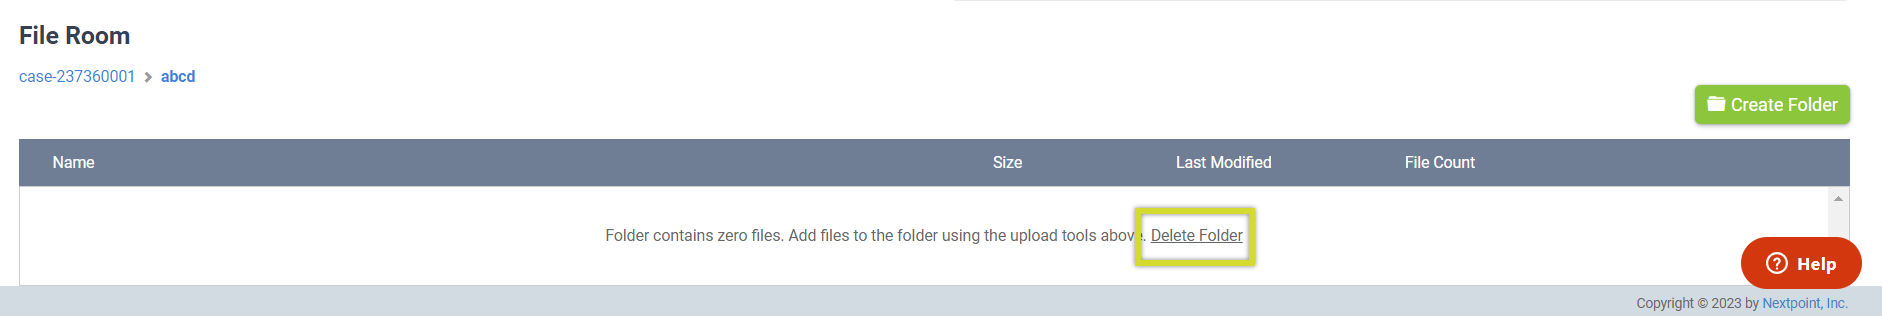 Delete Folder in File Room.png